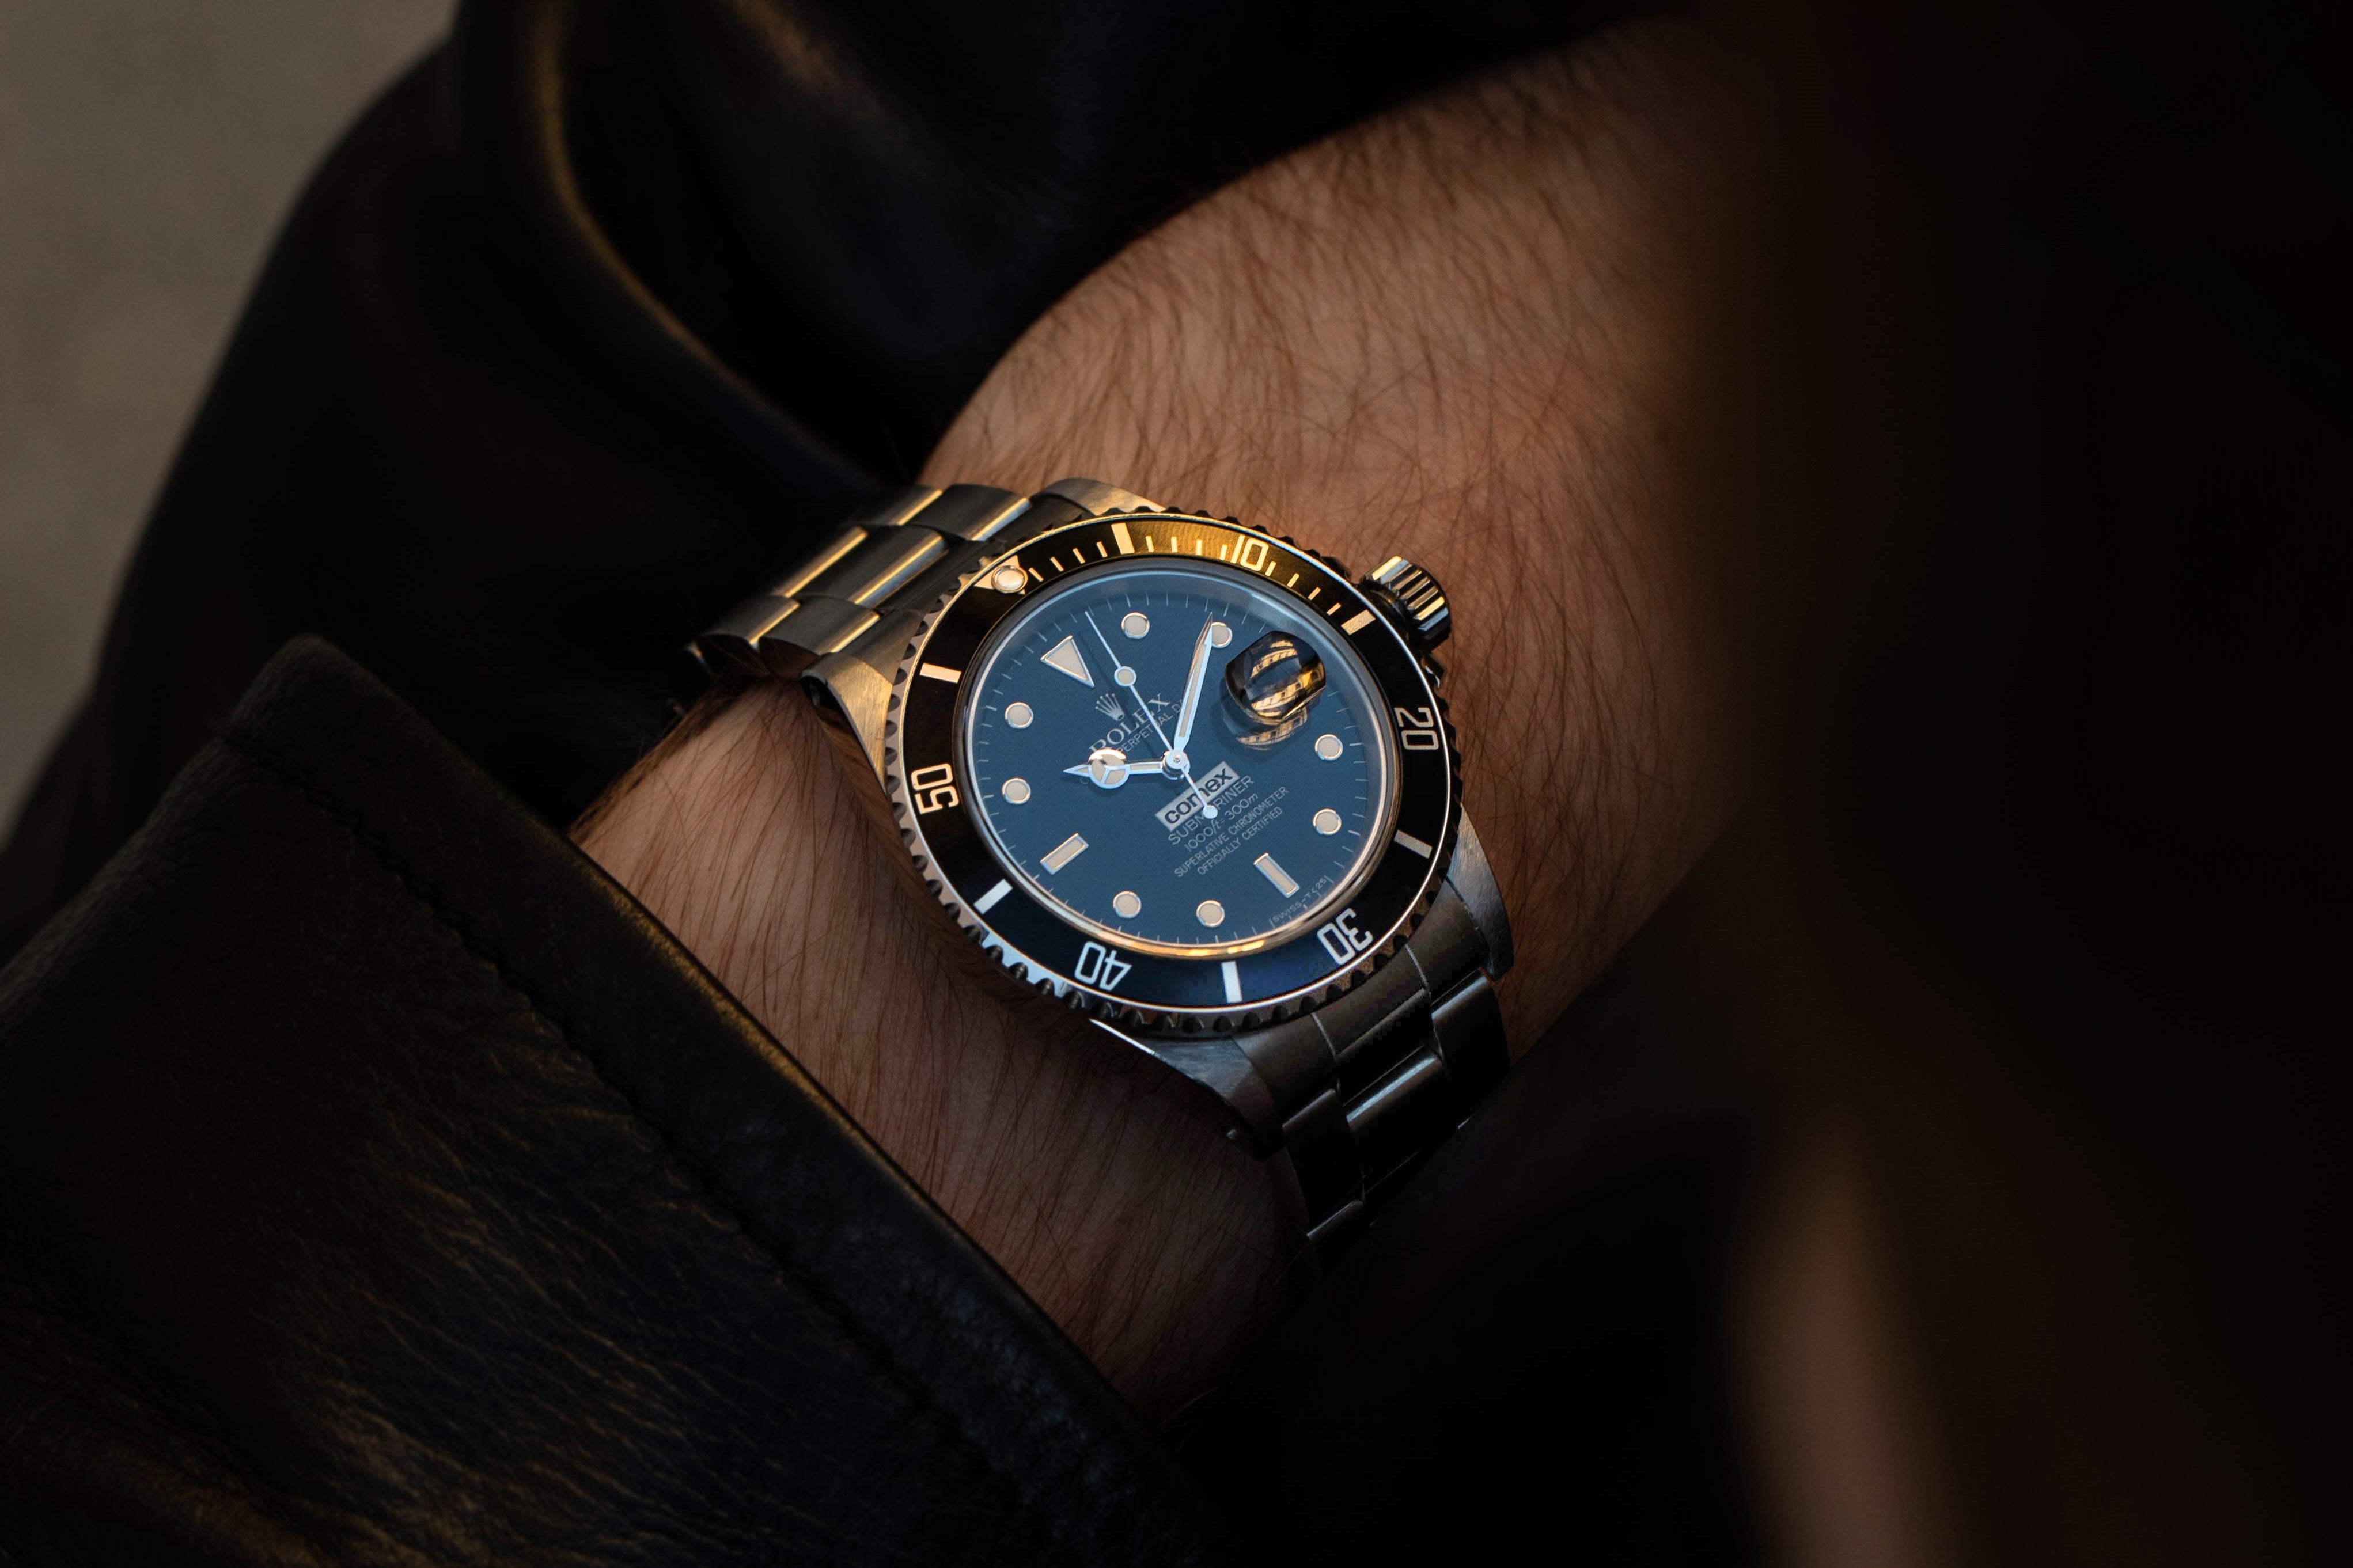 Rolex Submariner Comex vintage watch on the wrist